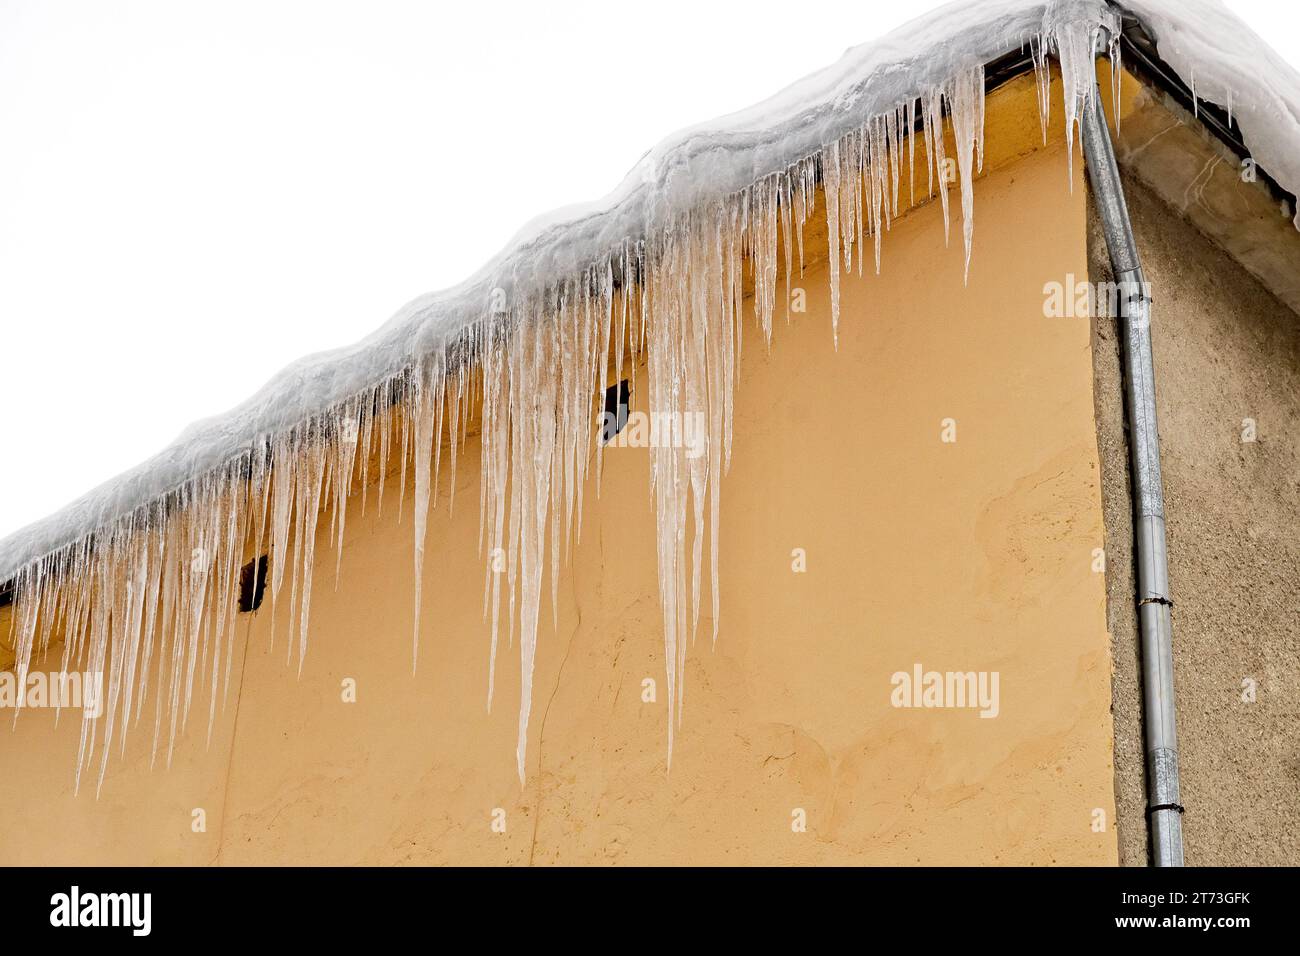 Riesige Eiszapfen hängen an den Traufen von Gebäuden und drohen während des Auftauens einzustürzen Stockfoto